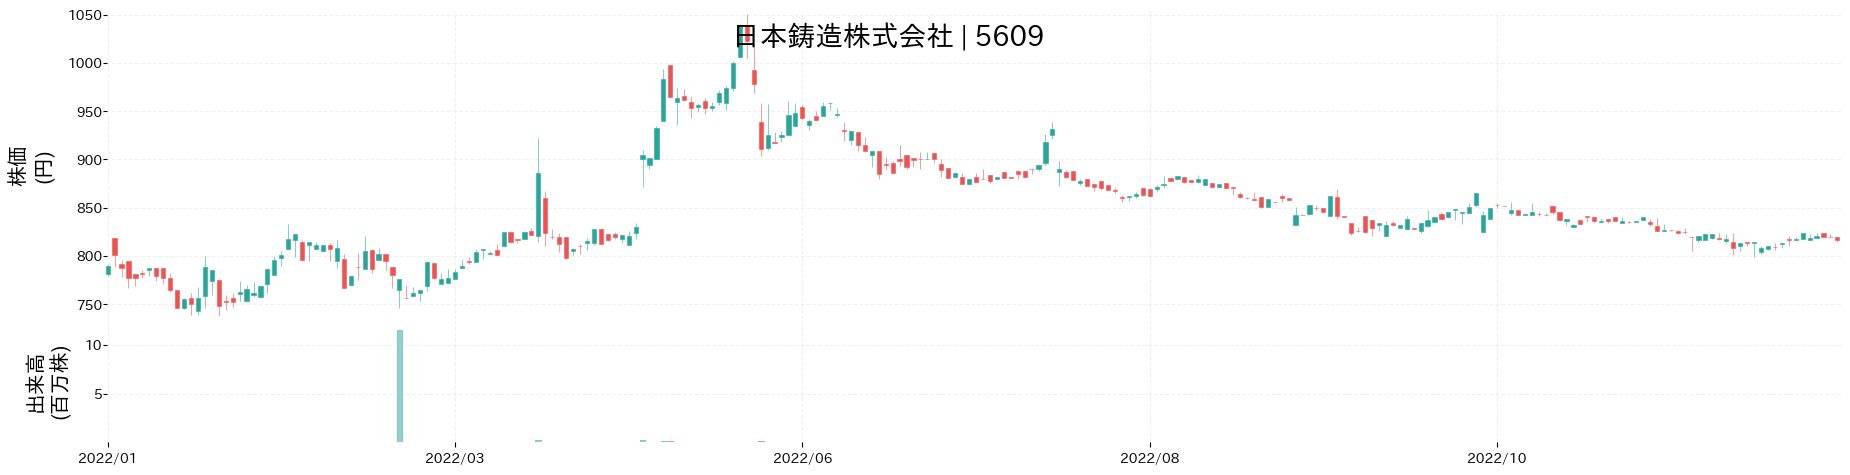 日本鋳造の株価推移(2022)